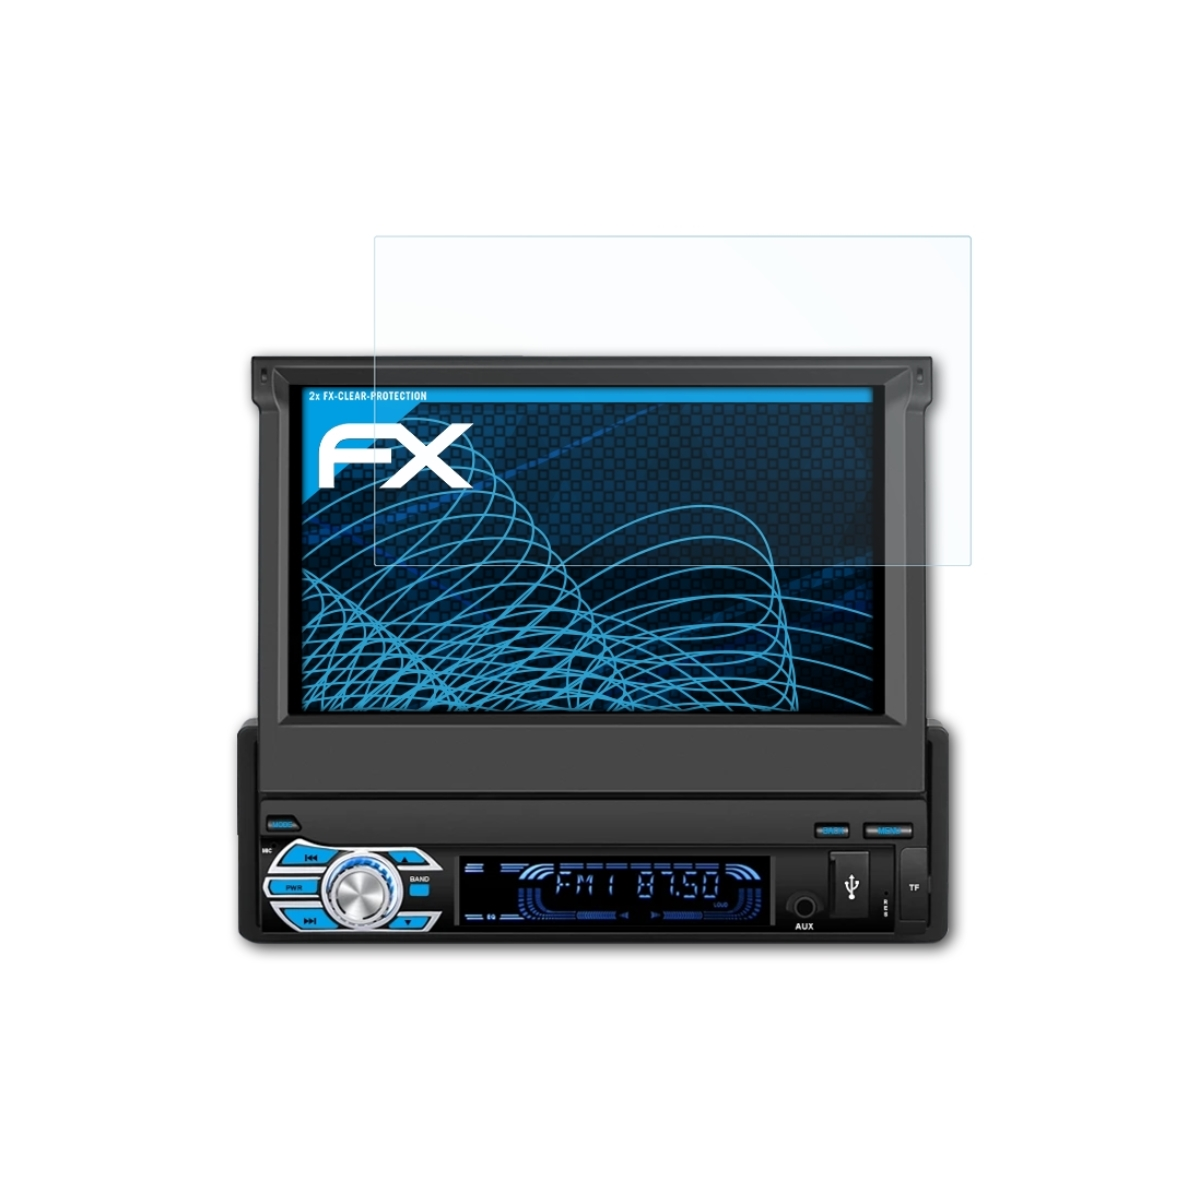 ATFOLIX 2x FX-Clear Displayschutz(für Inch)) AA0553B (7 Pumpkin